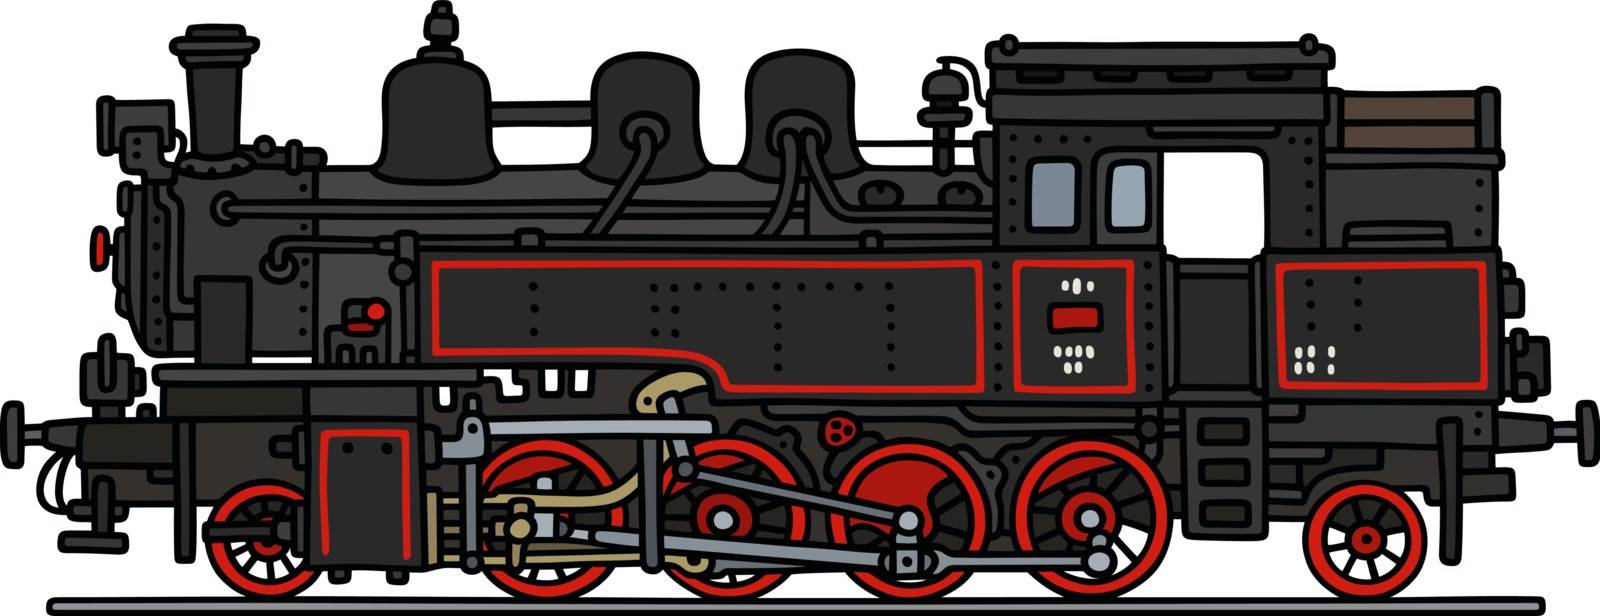 The retro steam locomotive by vostal